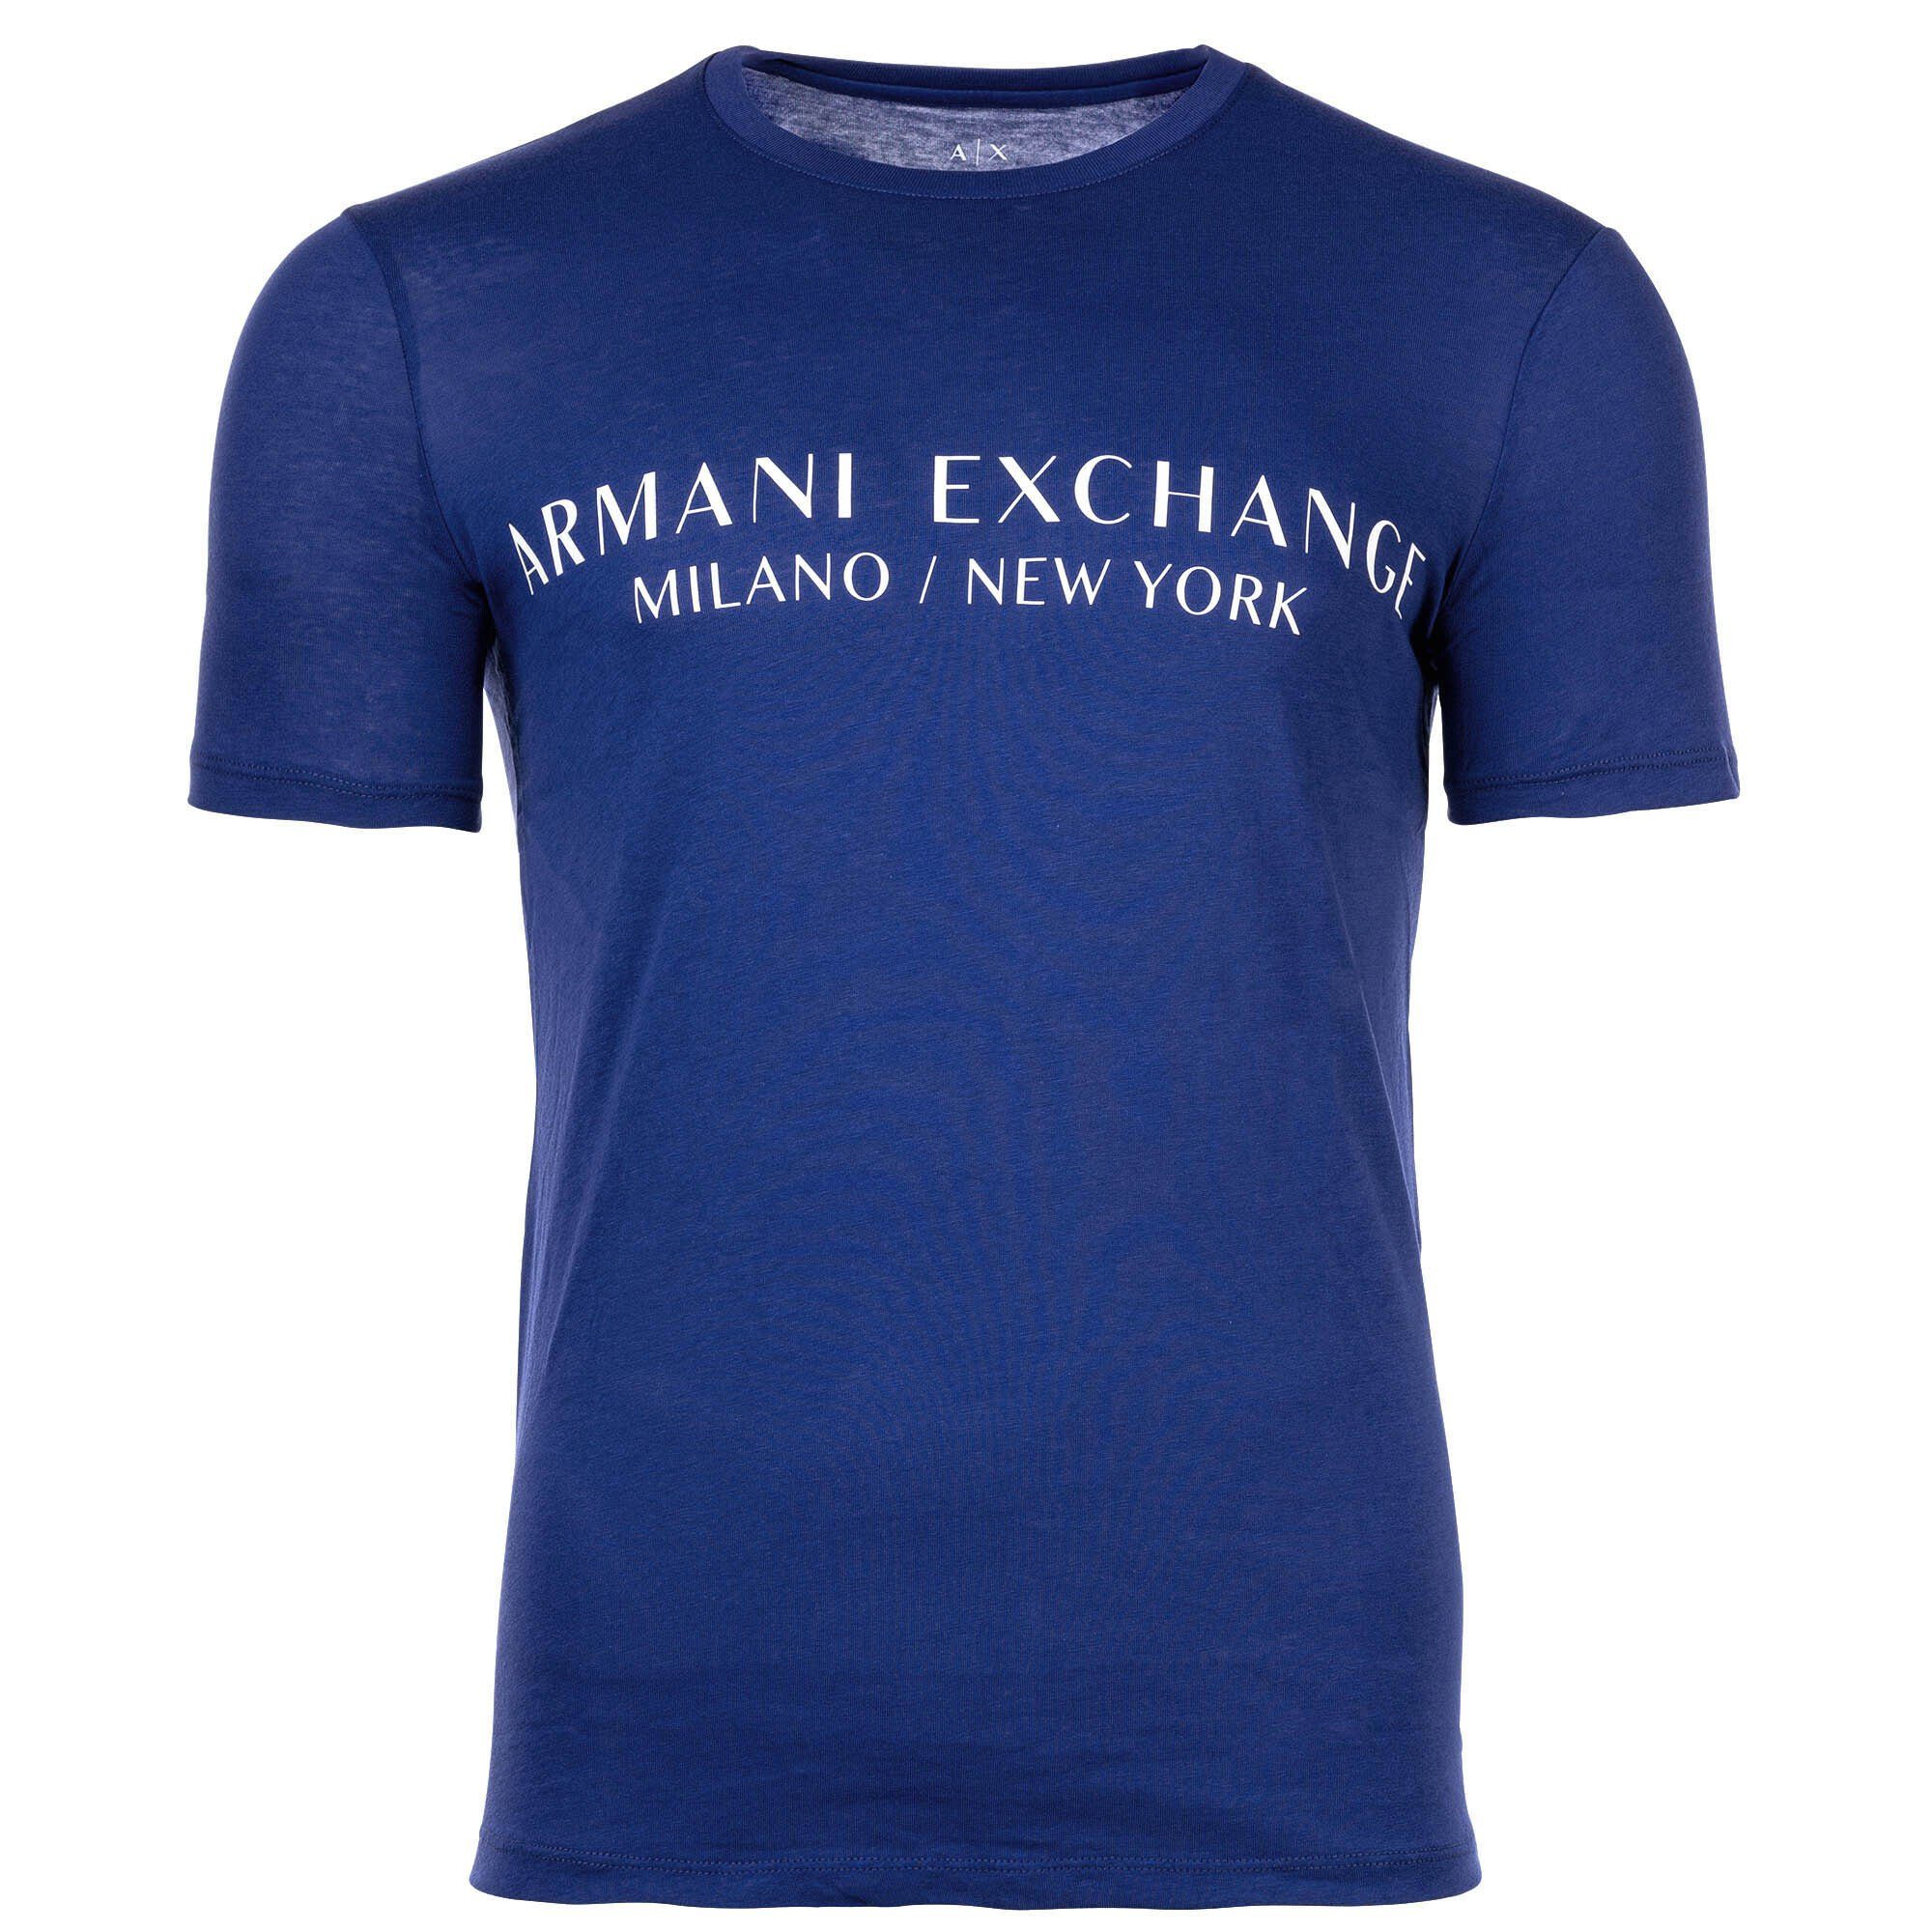 ARMANI EXCHANGE T-Shirt Herren T-Shirt - Schriftzug, Rundhals, Cotton Blau (New Ultramarine) | T-Shirts